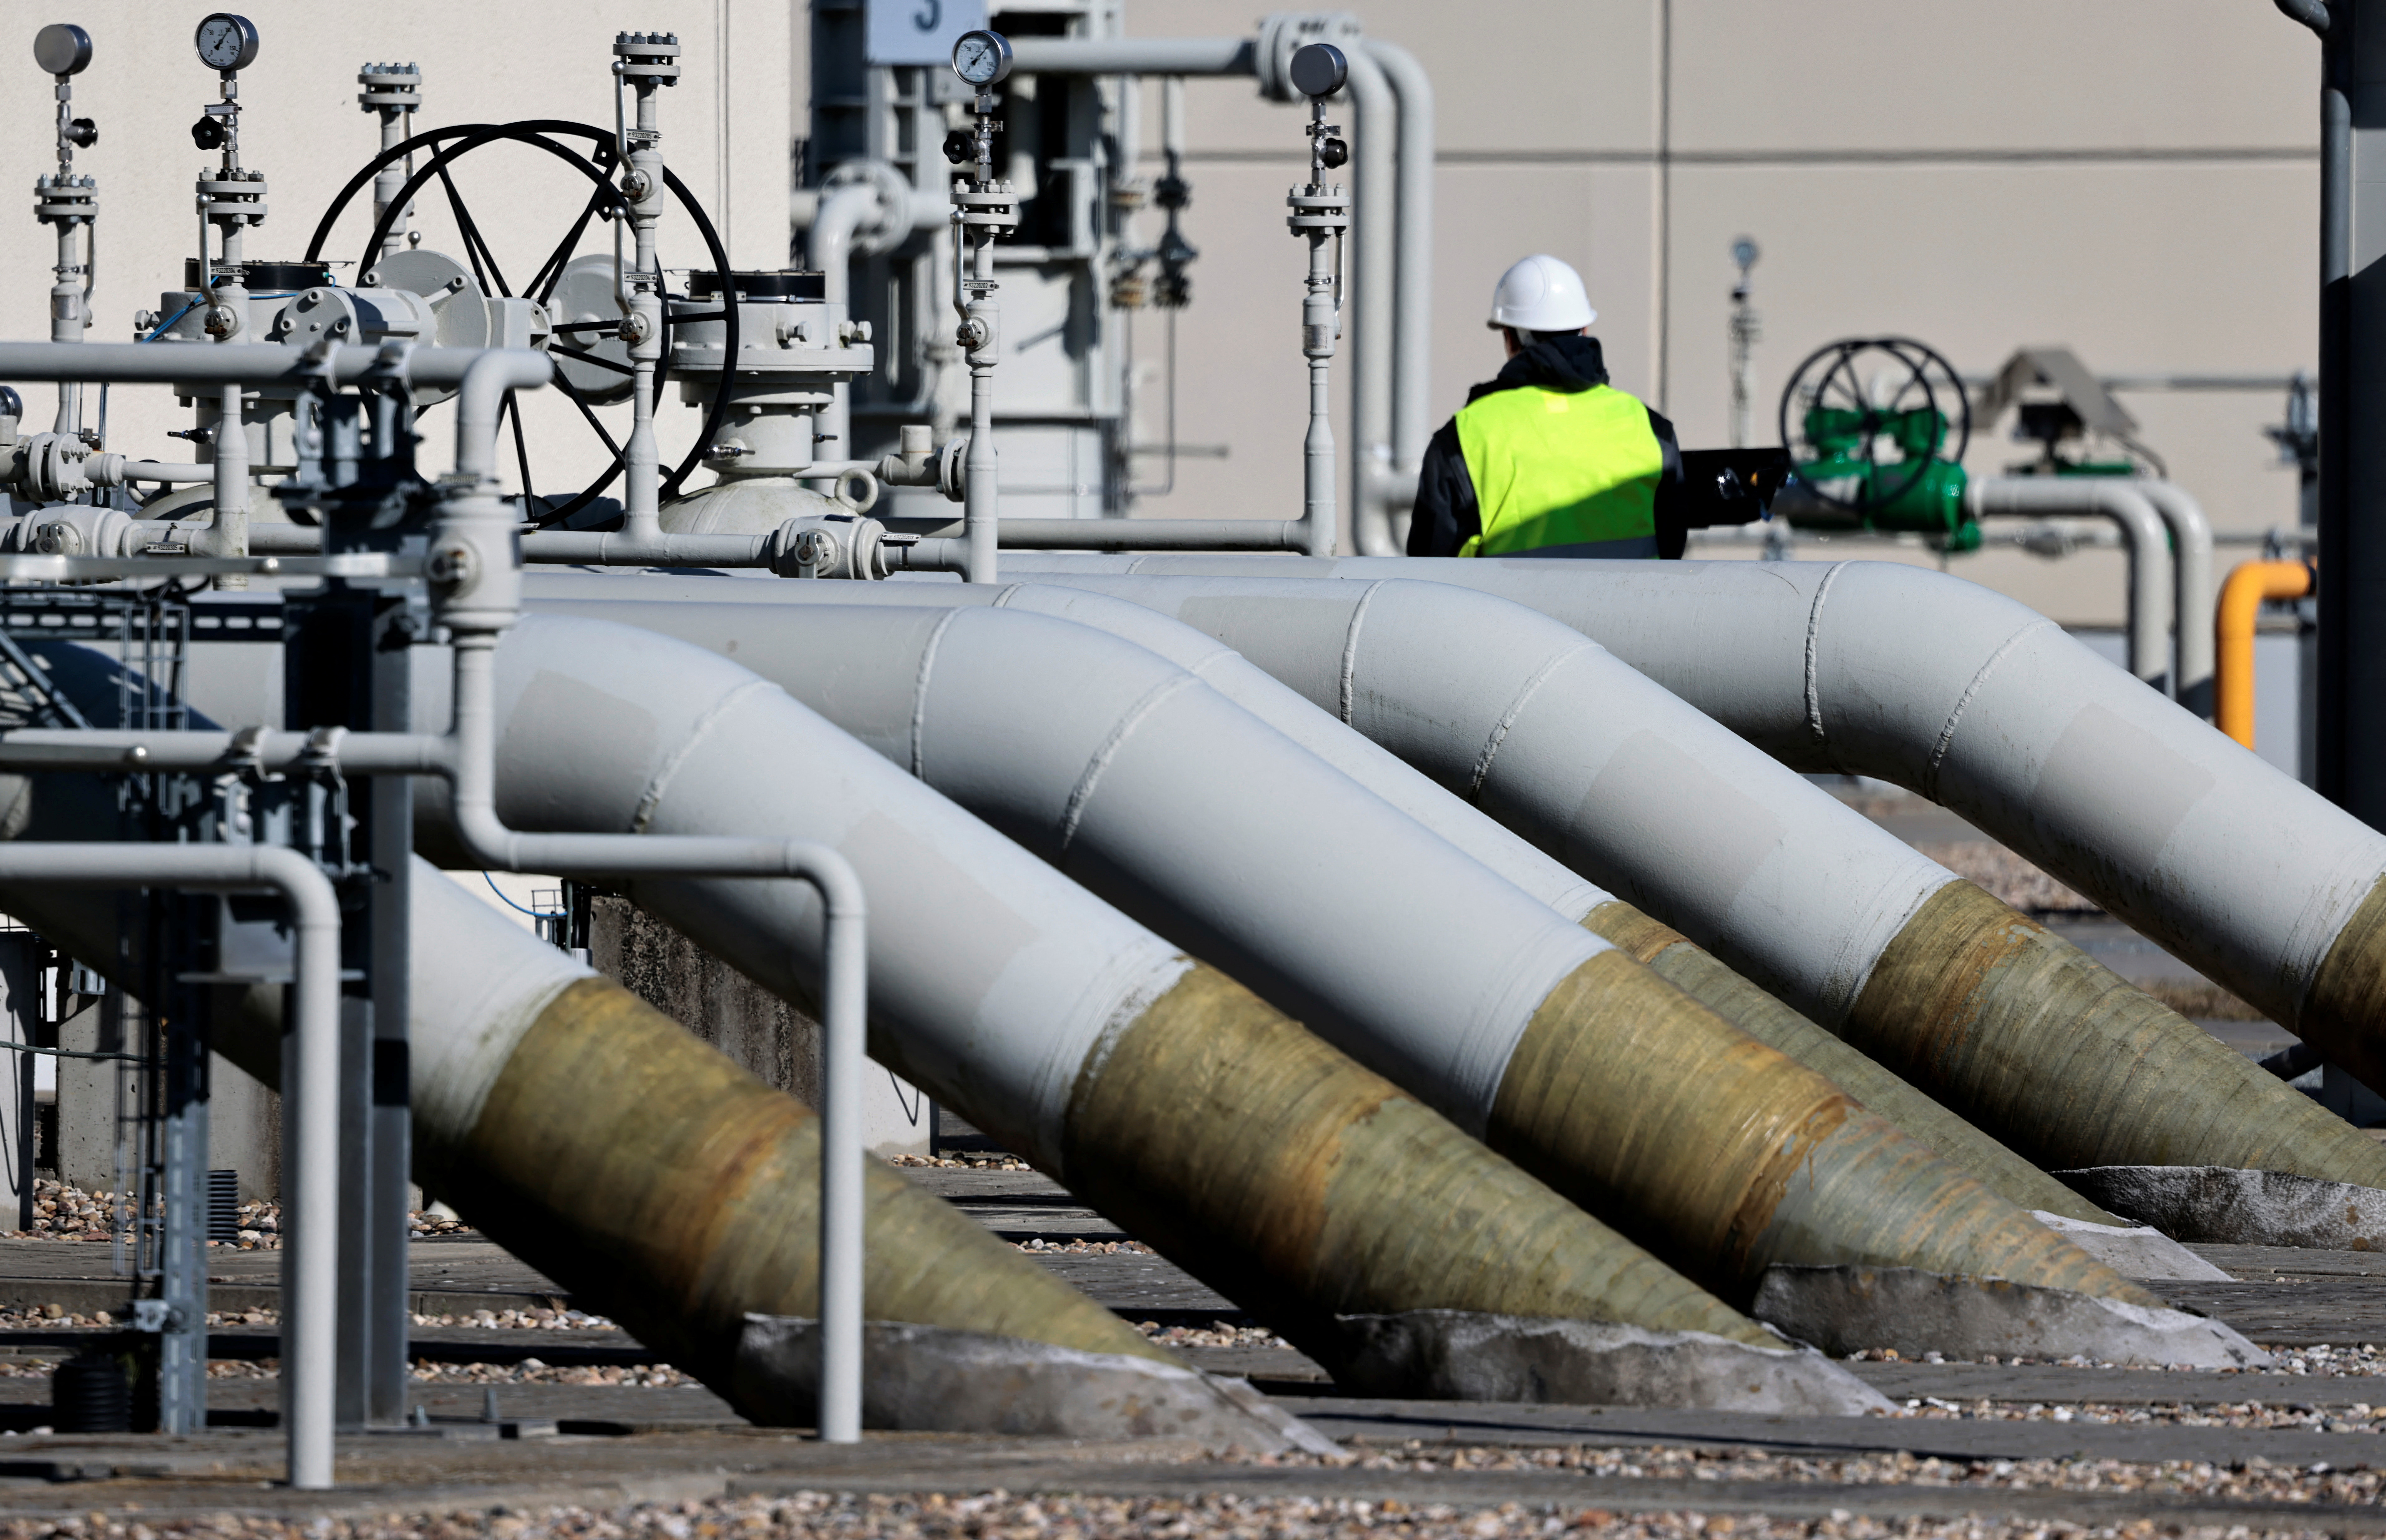 ΦΩΤΟΓΡΑΦΙΑ ΑΡΧΕΙΟΥ: Οι σωλήνες στις εγκαταστάσεις απόρριψης του αγωγού φυσικού αερίου «Nord Stream 1» απεικονίζονται στο Lubmin, Γερμανία, 8 Μαρτίου 2022. REUTERS/Hannibal Hanschke